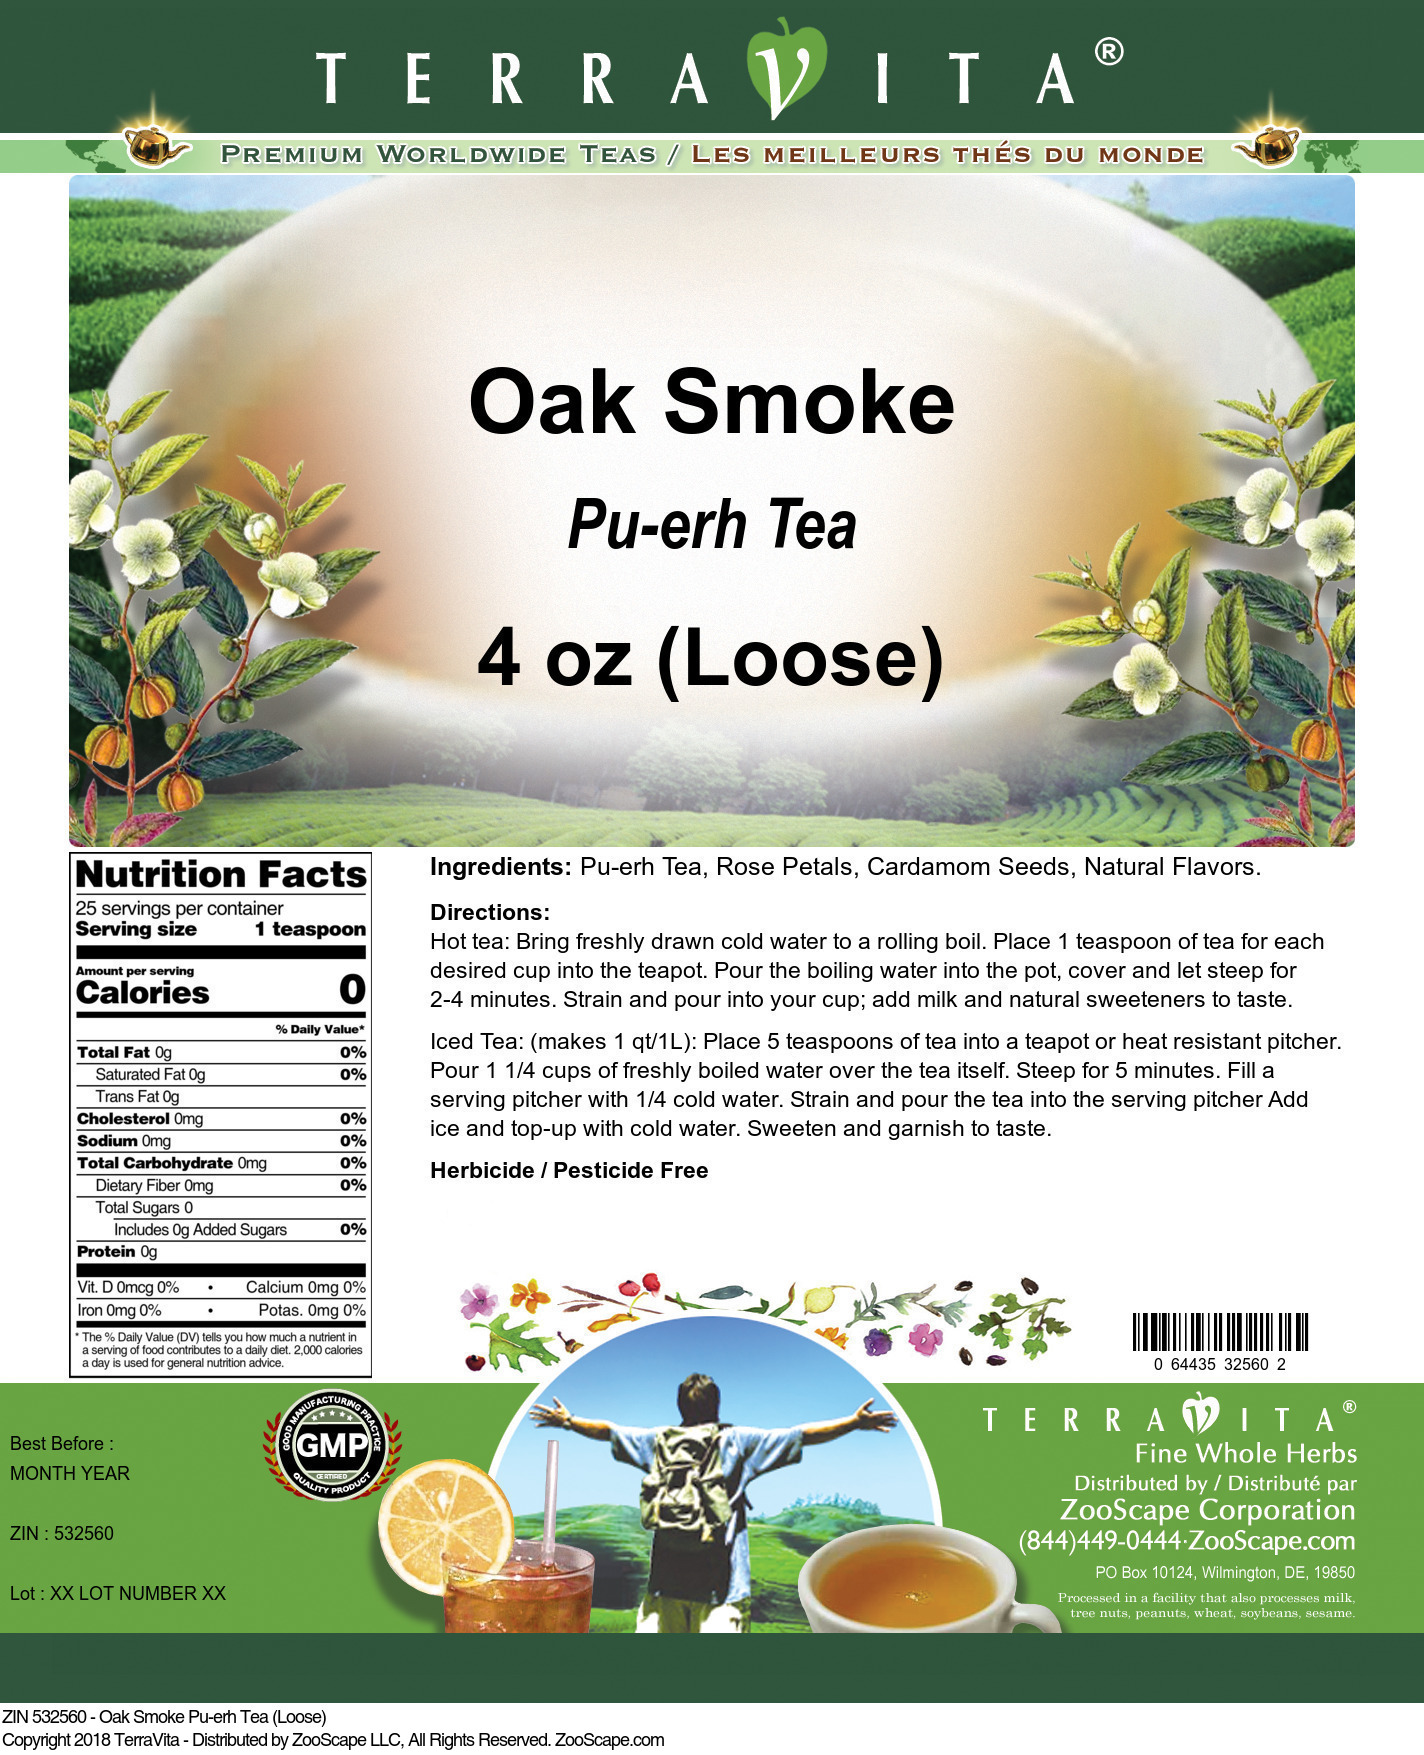 Oak Smoke Pu-erh Tea (Loose) - Label